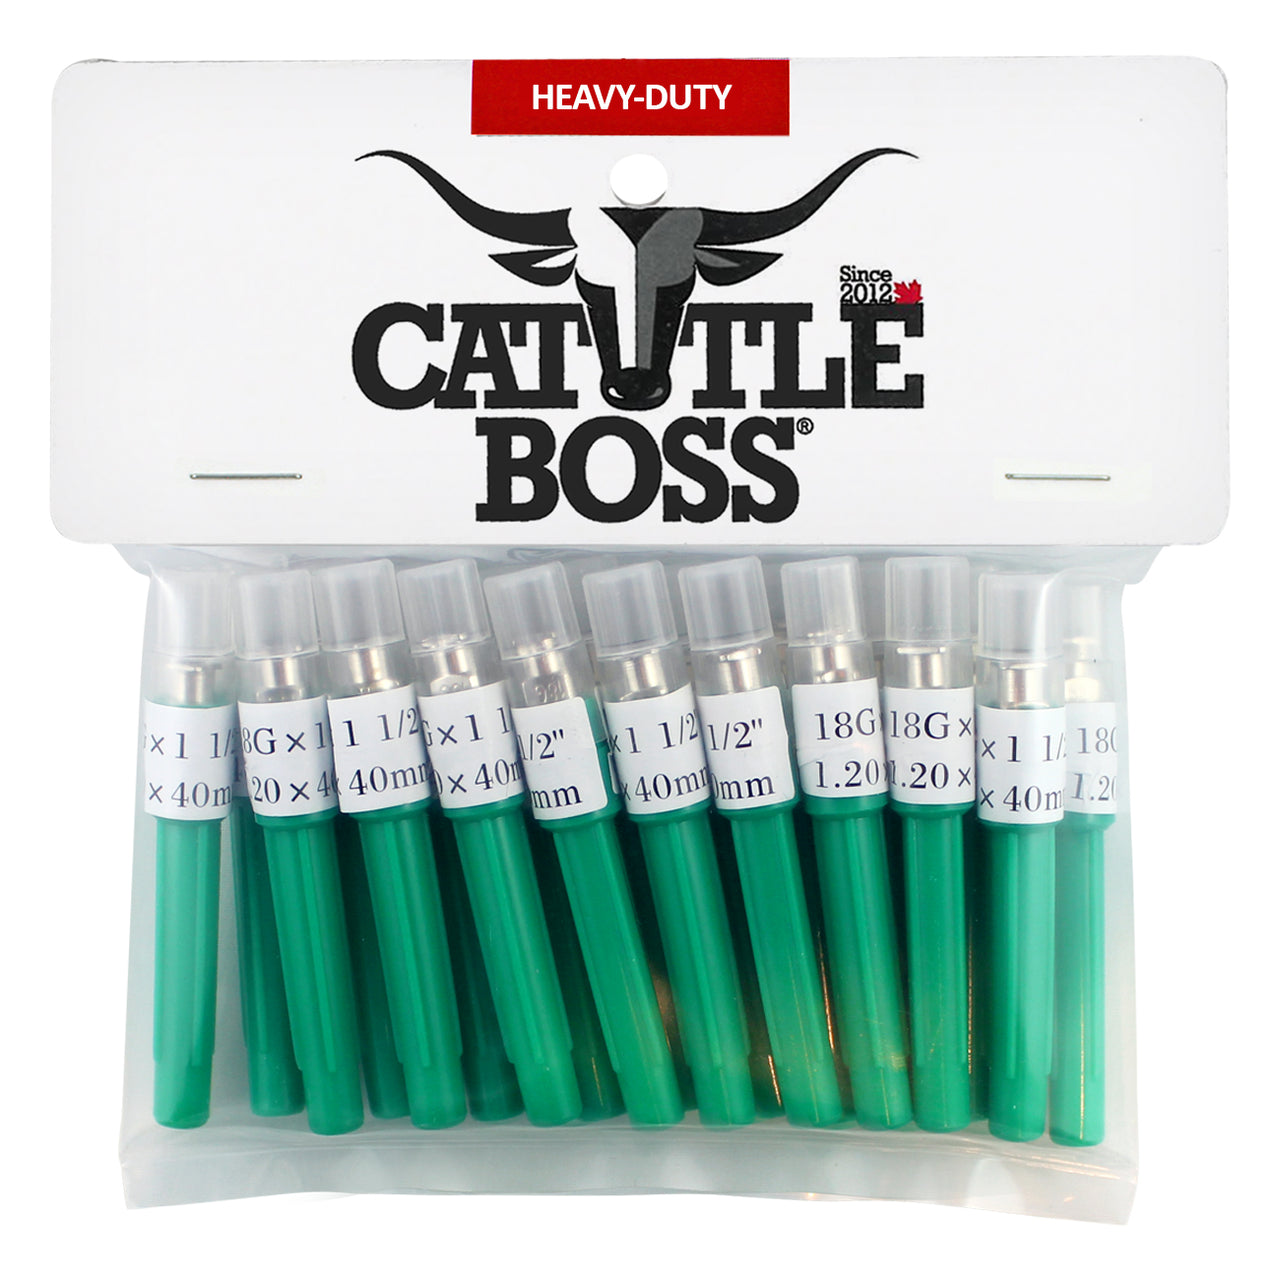 Cattle Boss Heavy-Duty Brass Hub (20 Pack) 18 X 1 1/2 - Needle Cattle Boss - Canada